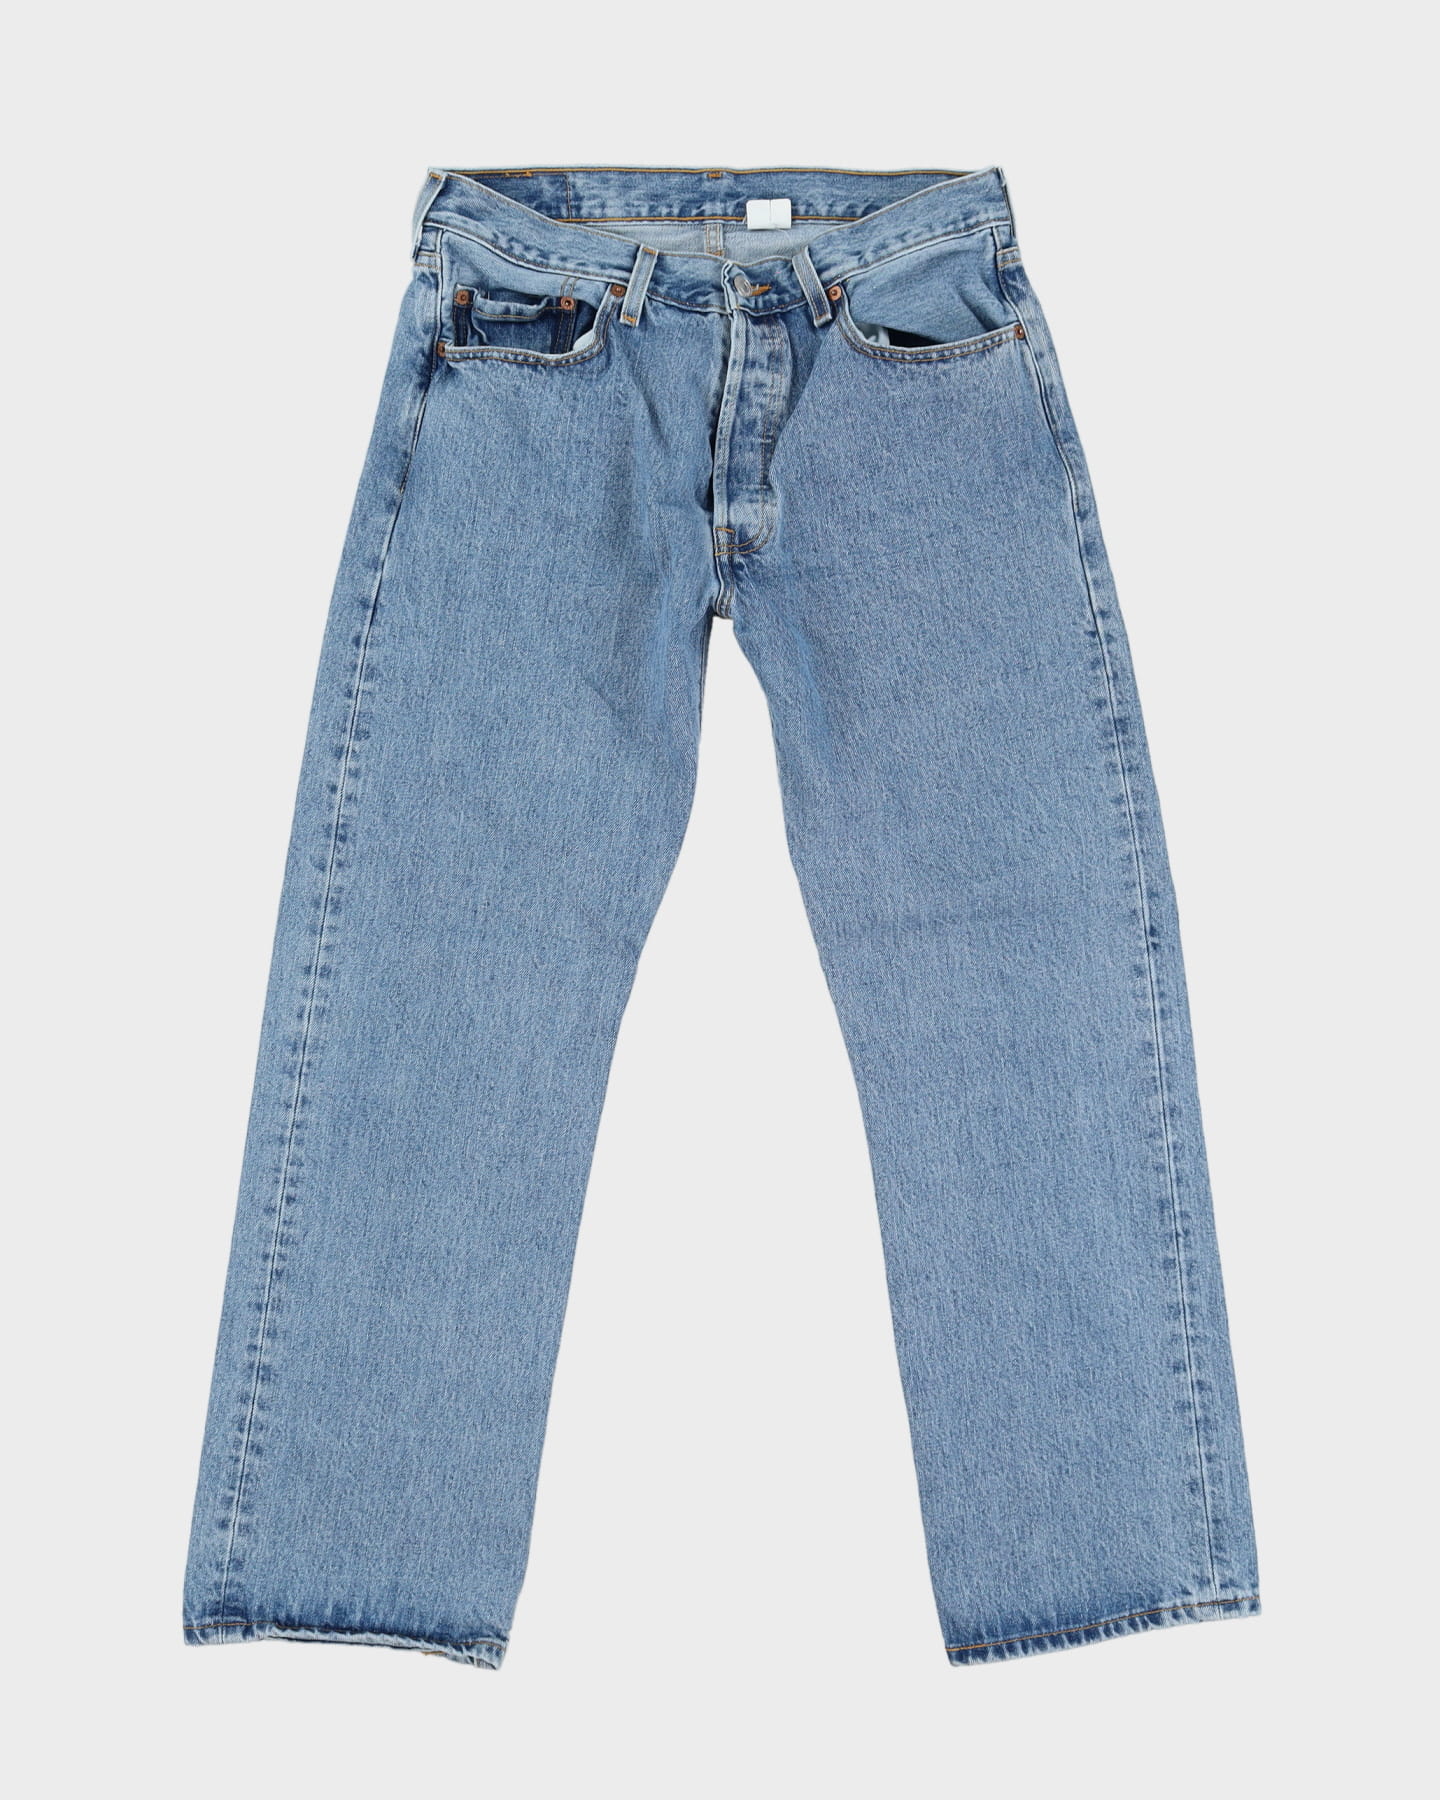 Vintage 80s Levi's 501 Blue Jeans - W32 L30